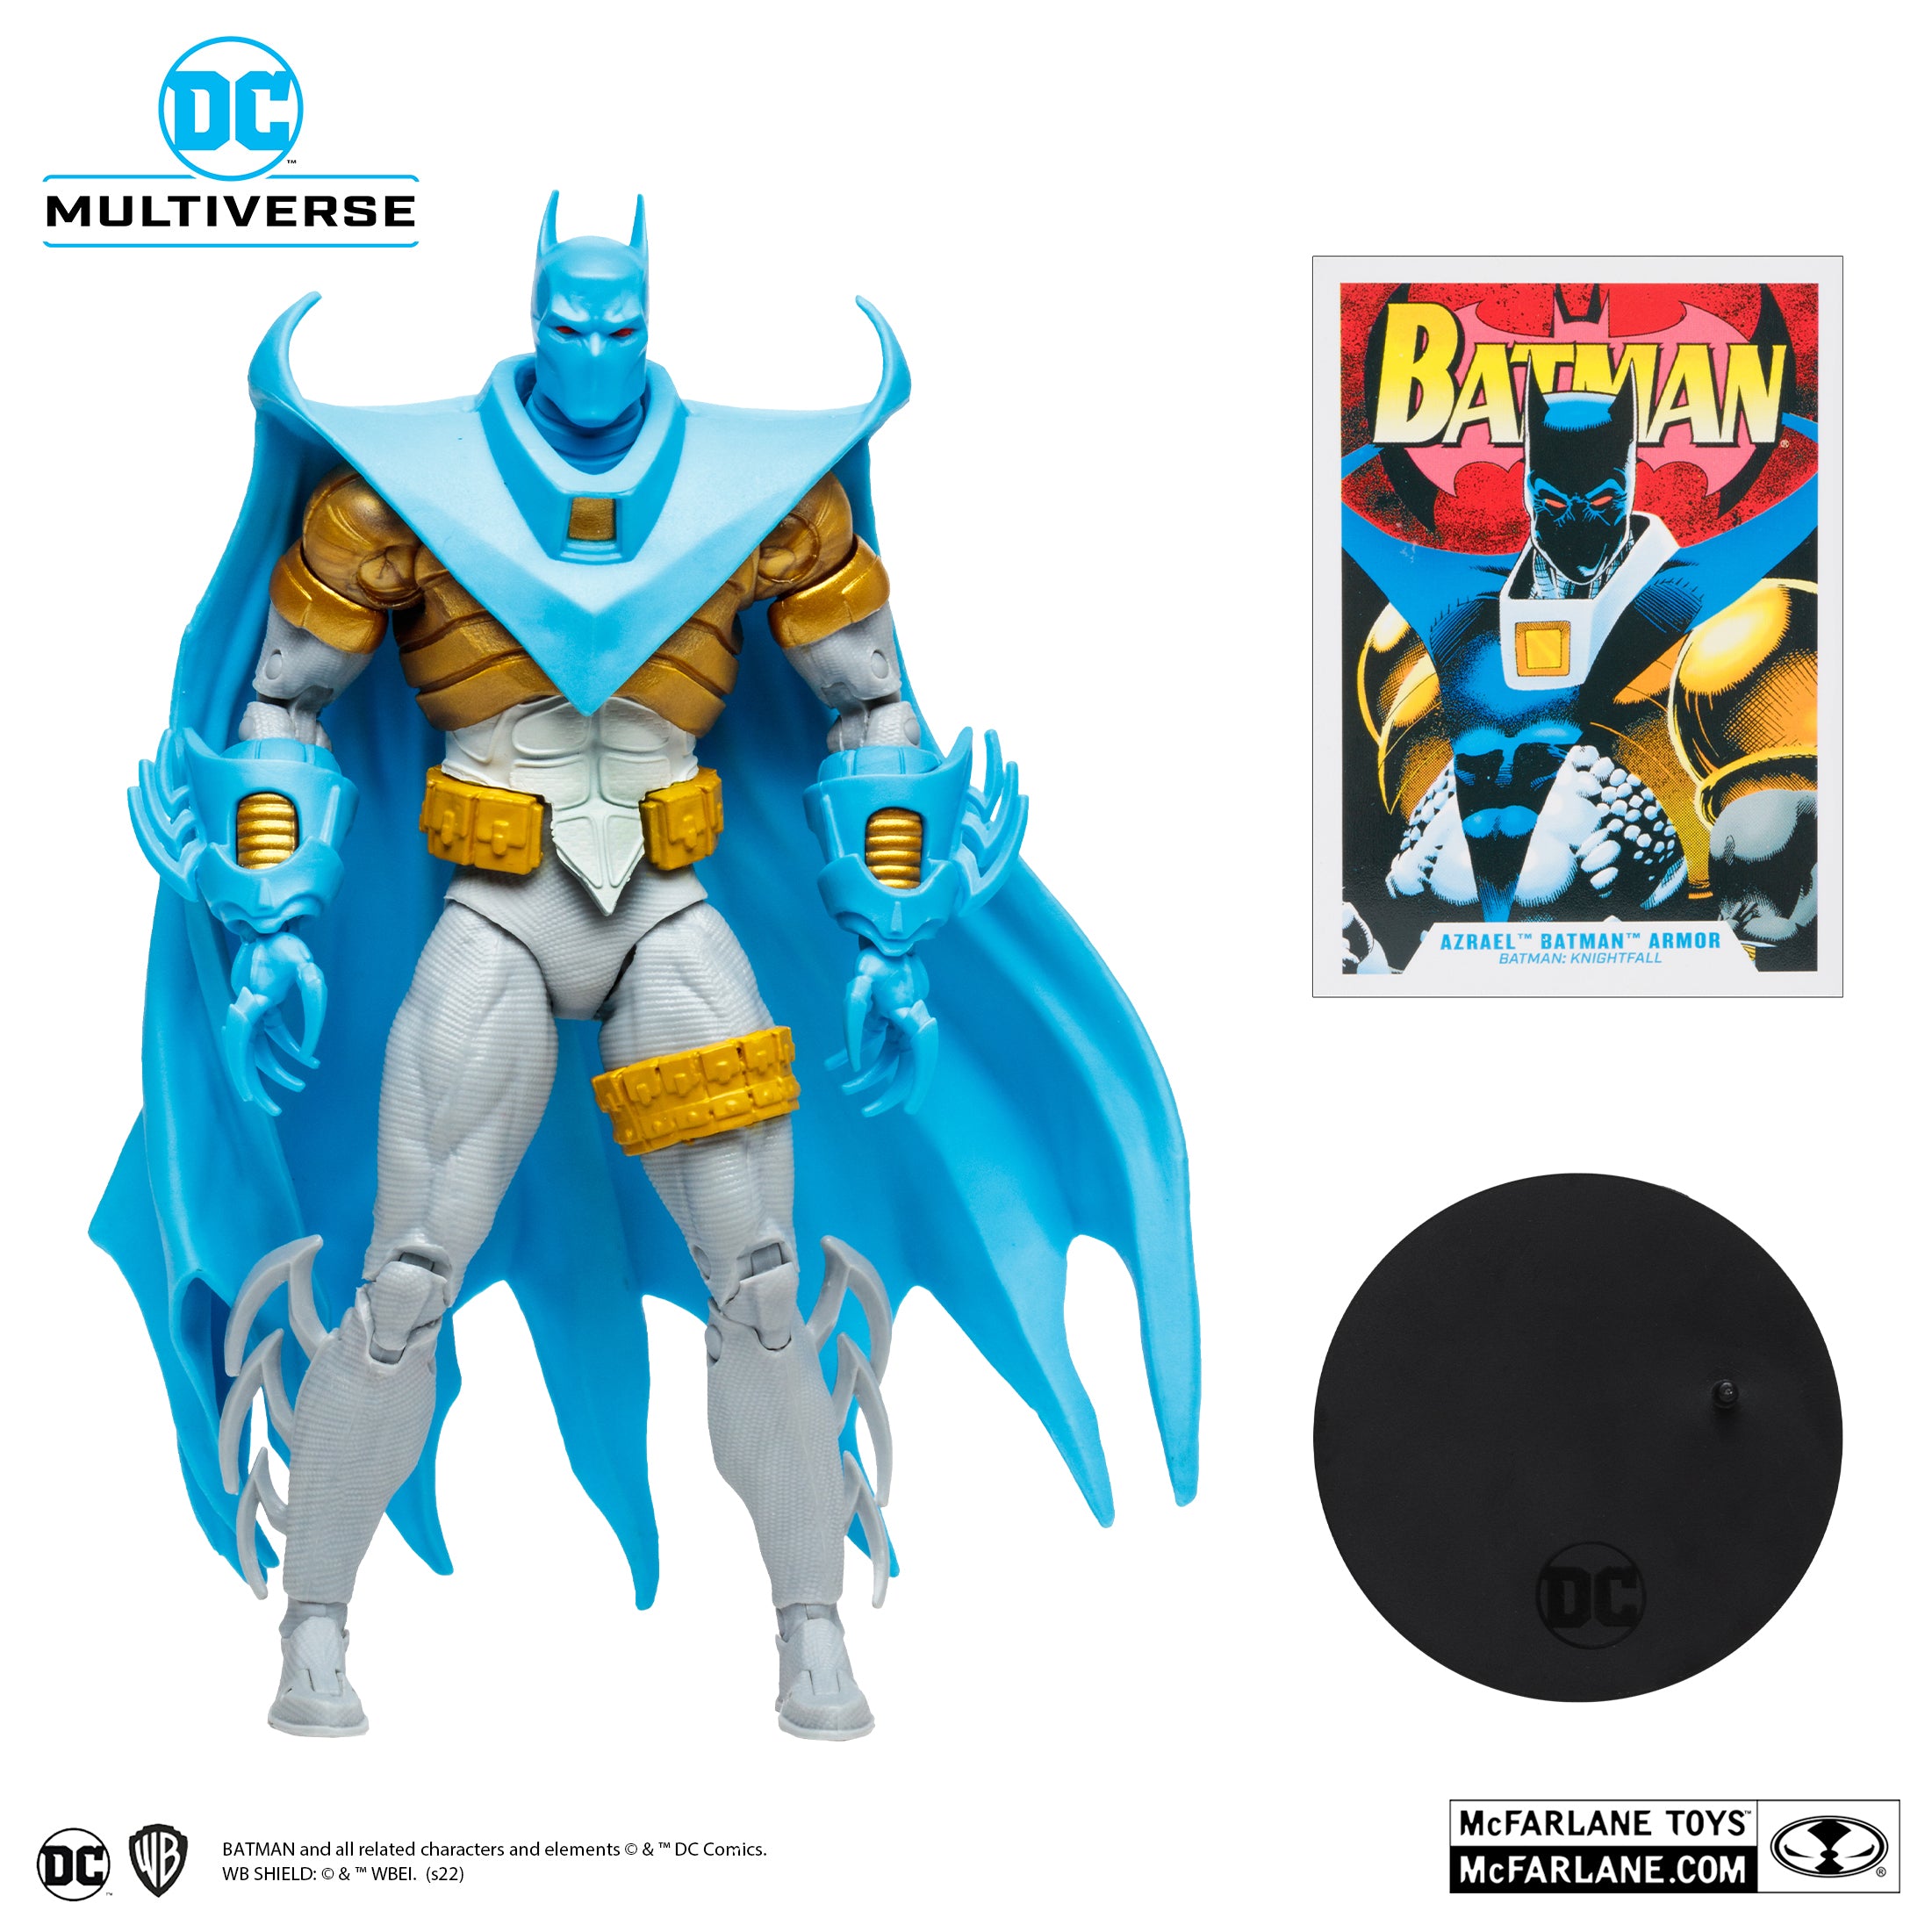 Az-Bat Batman Knightfall DC Comics Action Figure by McFarlane Toys